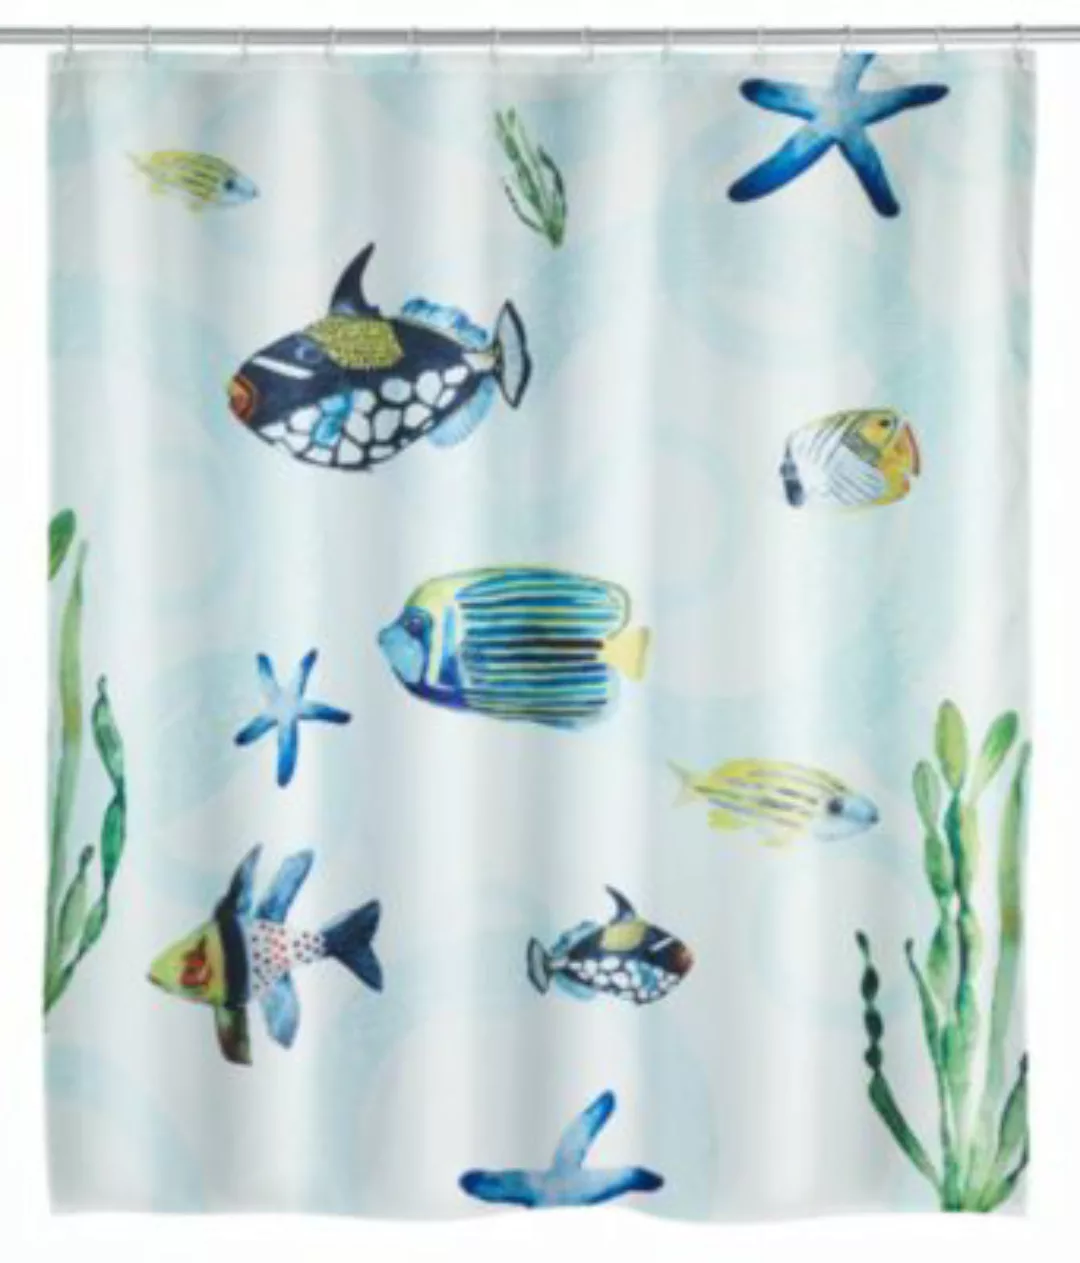 WENKO Duschvorhang Aquaria, Textil (Polyester), 180 x 200 cm, waschbar mehr günstig online kaufen